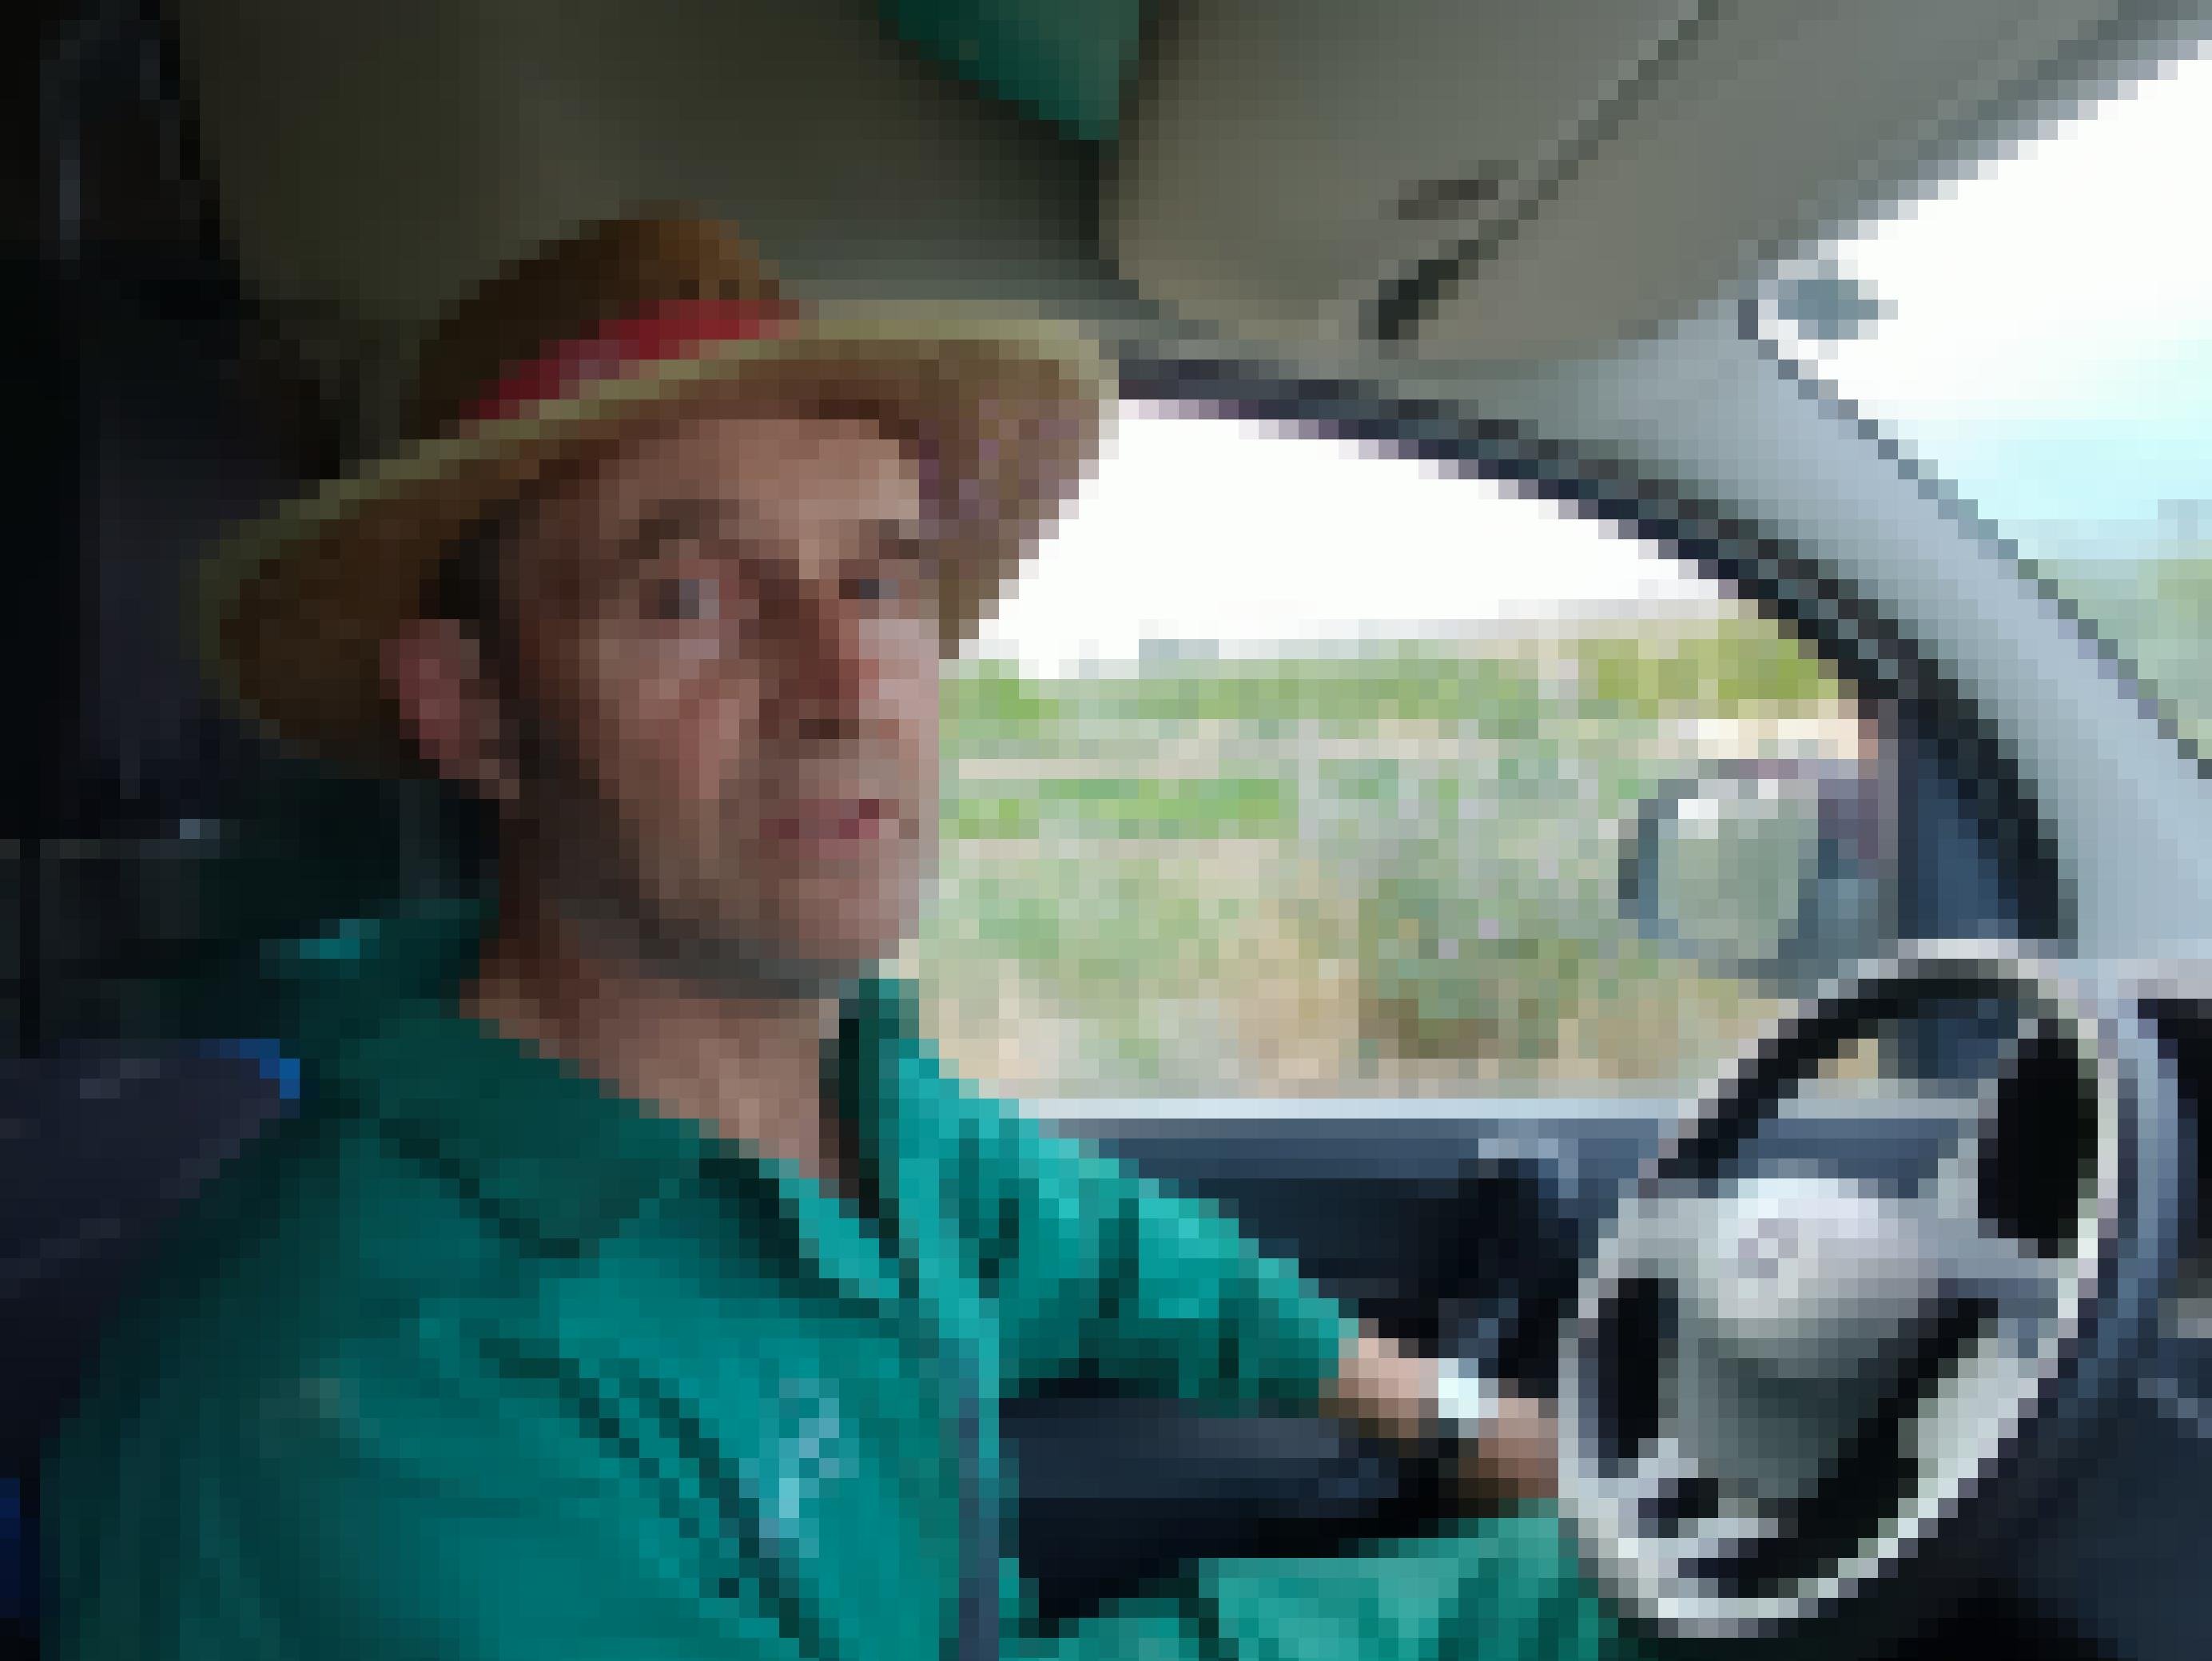 Ein Mann im grünen Overall und mit Strohhut sitzt in einem Auto und blickt fragend in die Kamera.